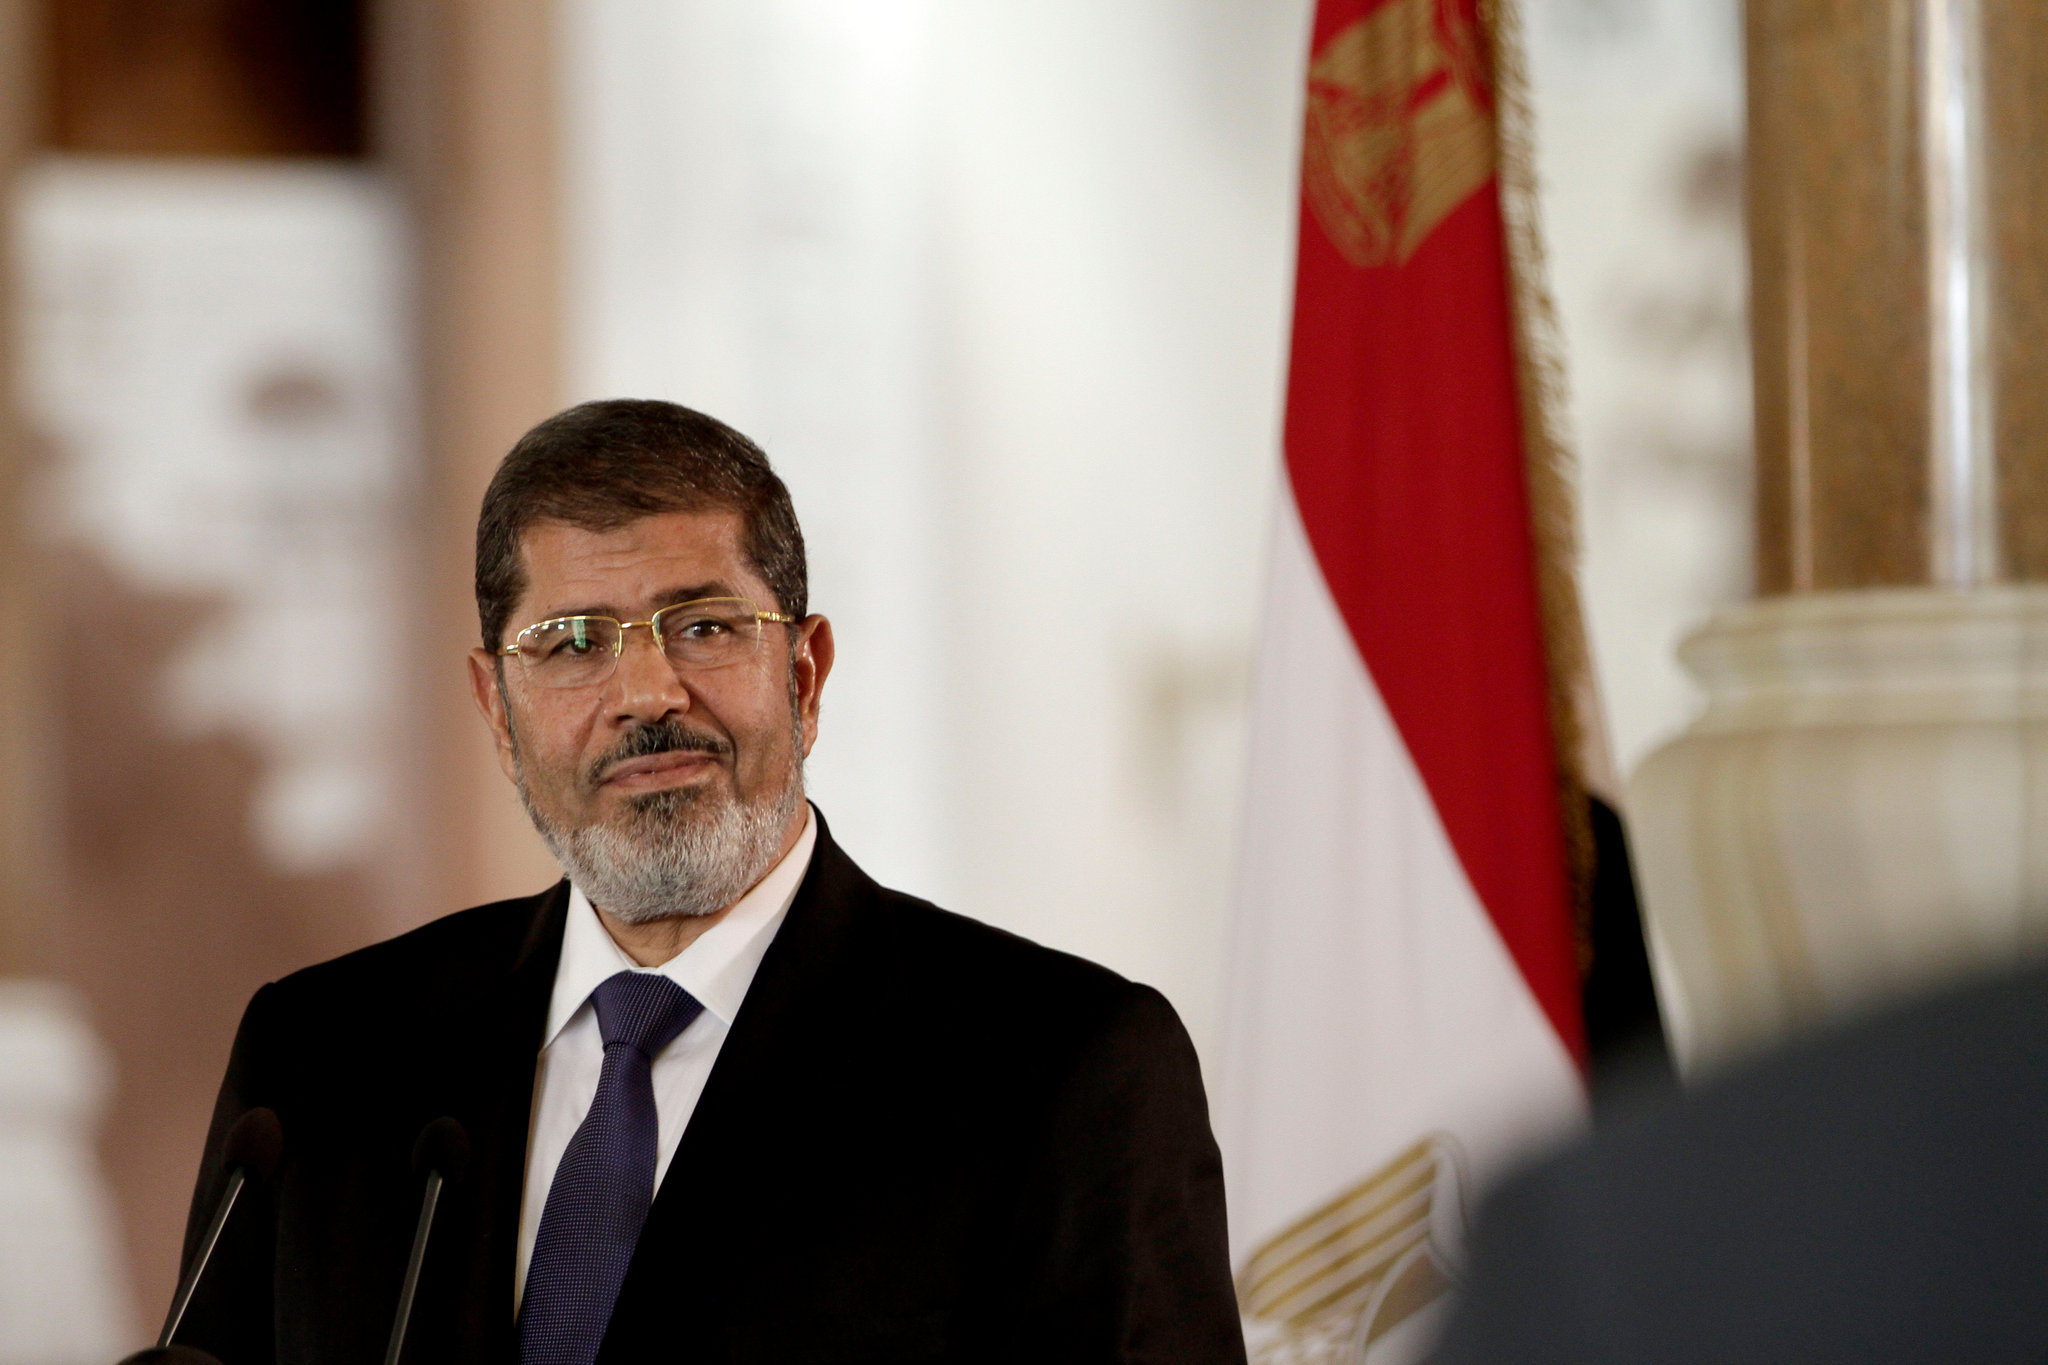 Mohammed Morsi, President of Egypt